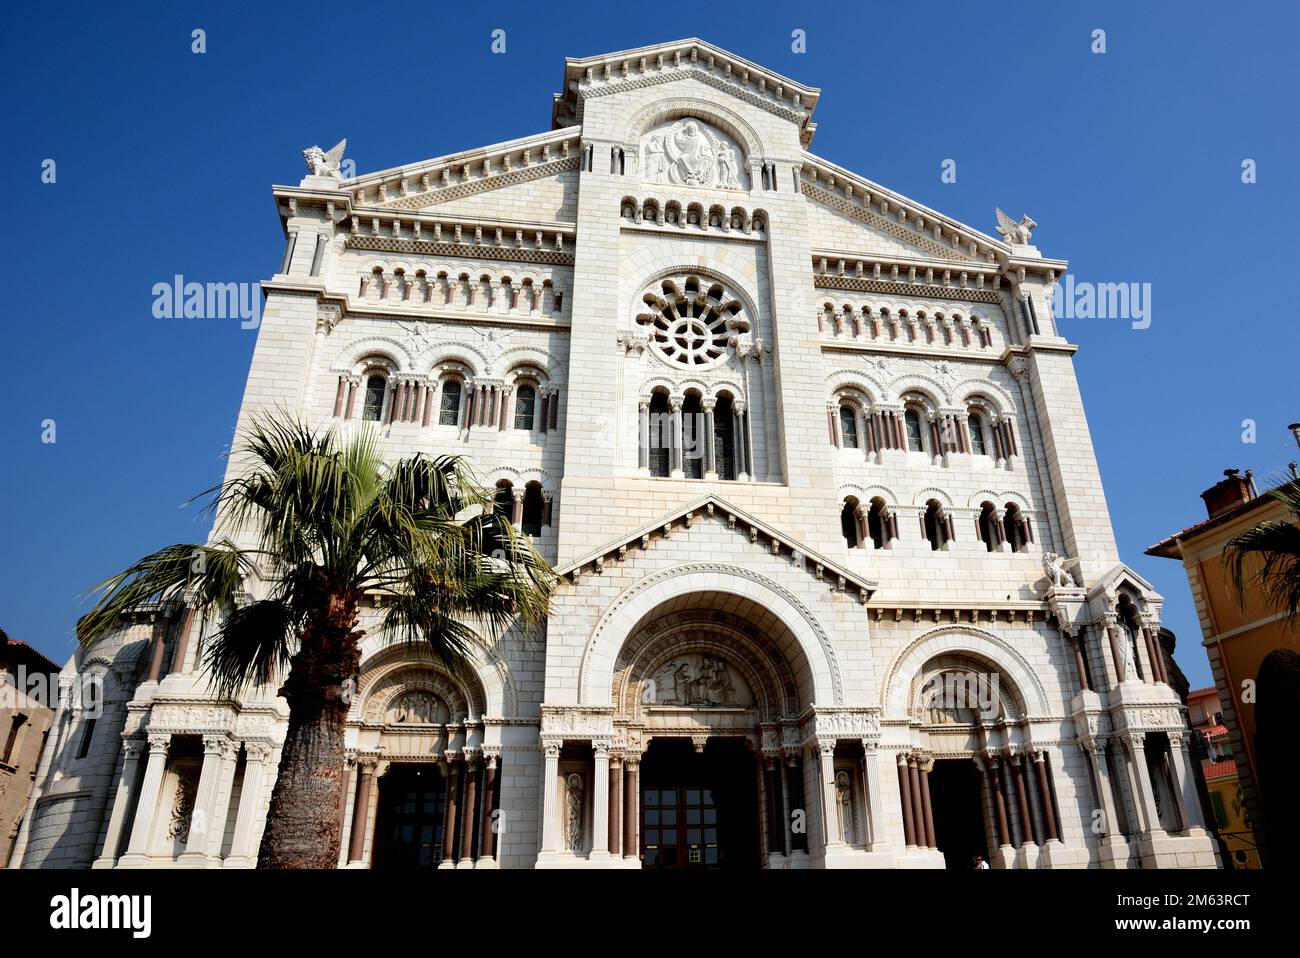 Il principato di Monaco è un piccolo stato indipendente, la cattedrale di Notre Dame è un importante edificio religioso in stile romano bizantino. Foto Stock